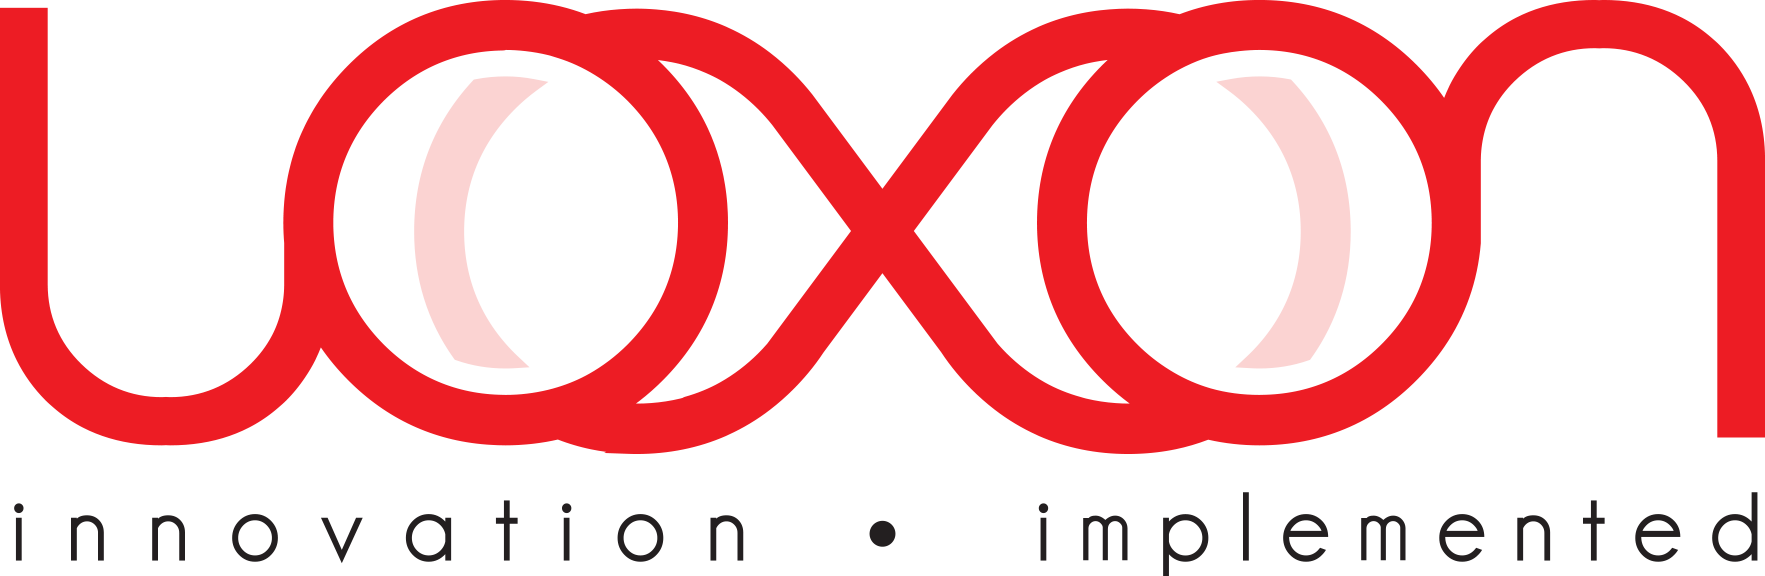 Loxon logo